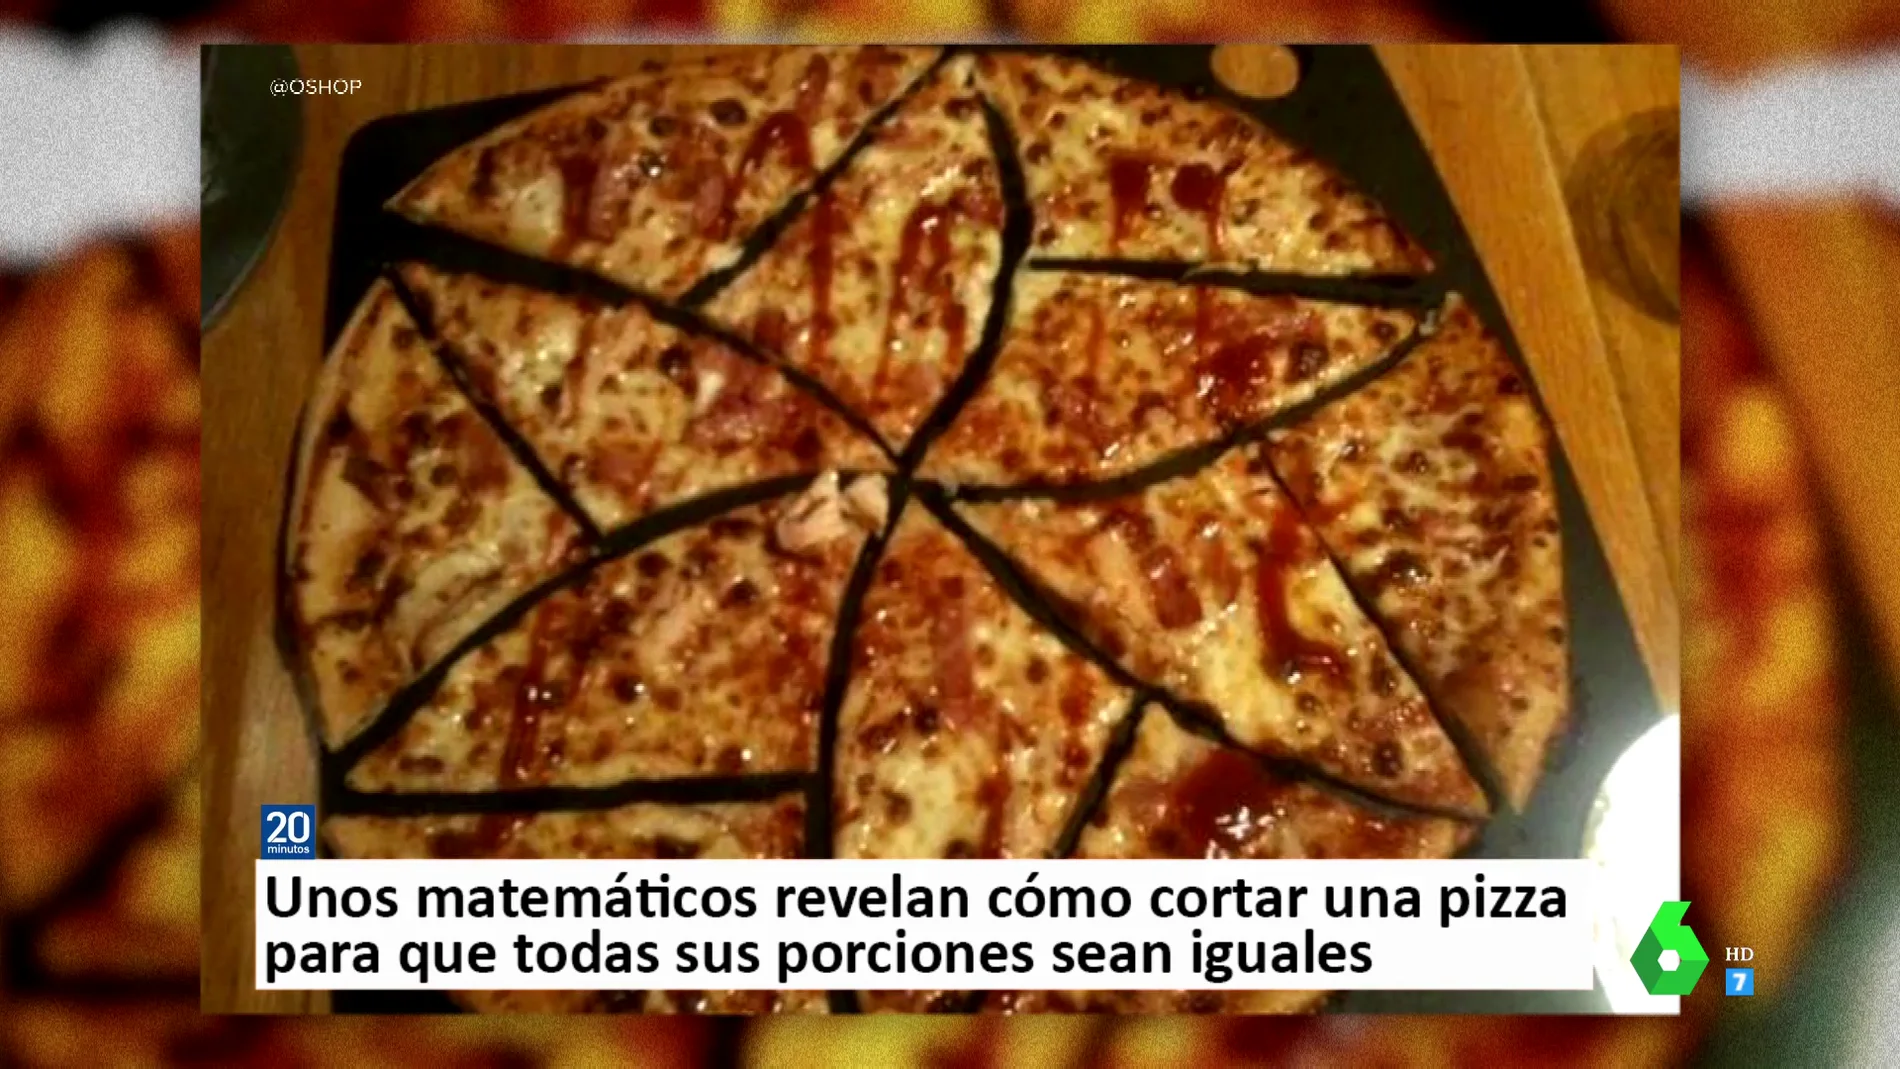 Este es el truco definitivo para cortar una pizza y que todas sus porciones sean iguales